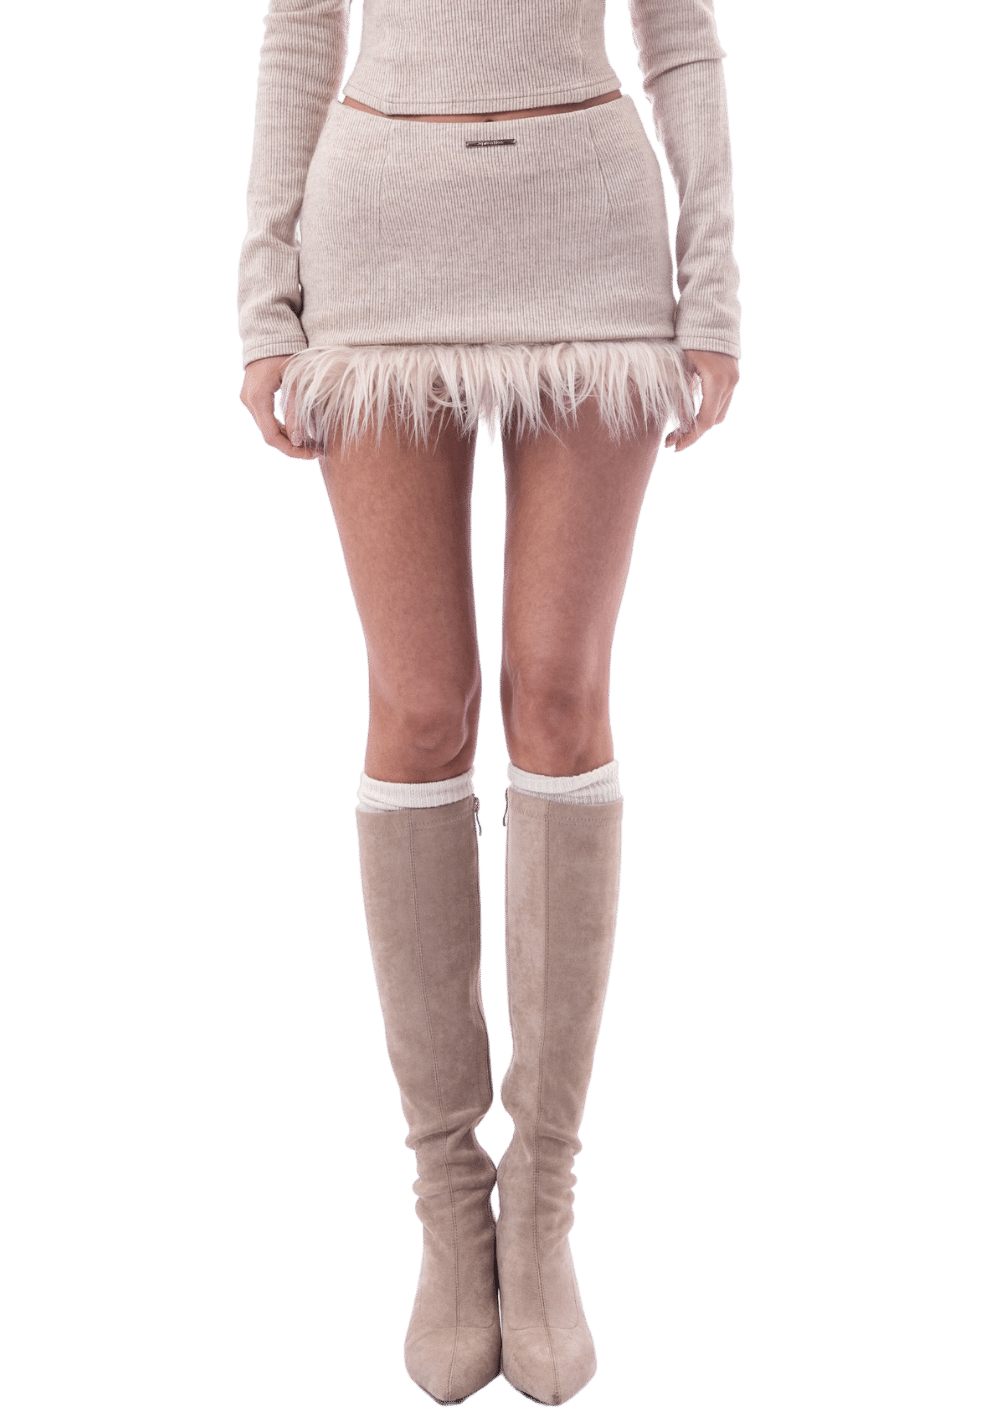 Fuzzy Knit Skirt - PSYLOS 1, Fuzzy Knit Skirt, Dress/Skirt, Jqwention, PSYLOS 1